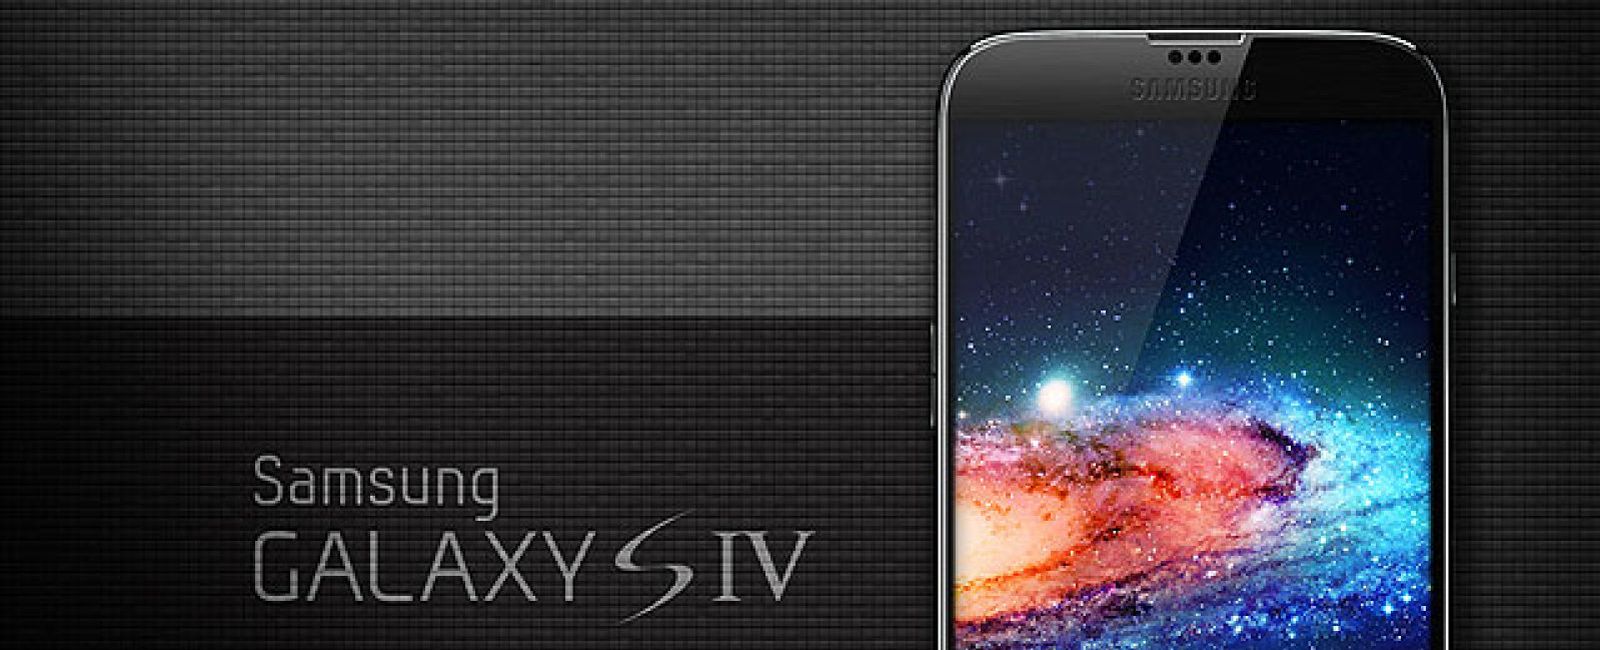 Foto: El Galaxy S IV, tal y como lo pintan las filtraciones de Samsung